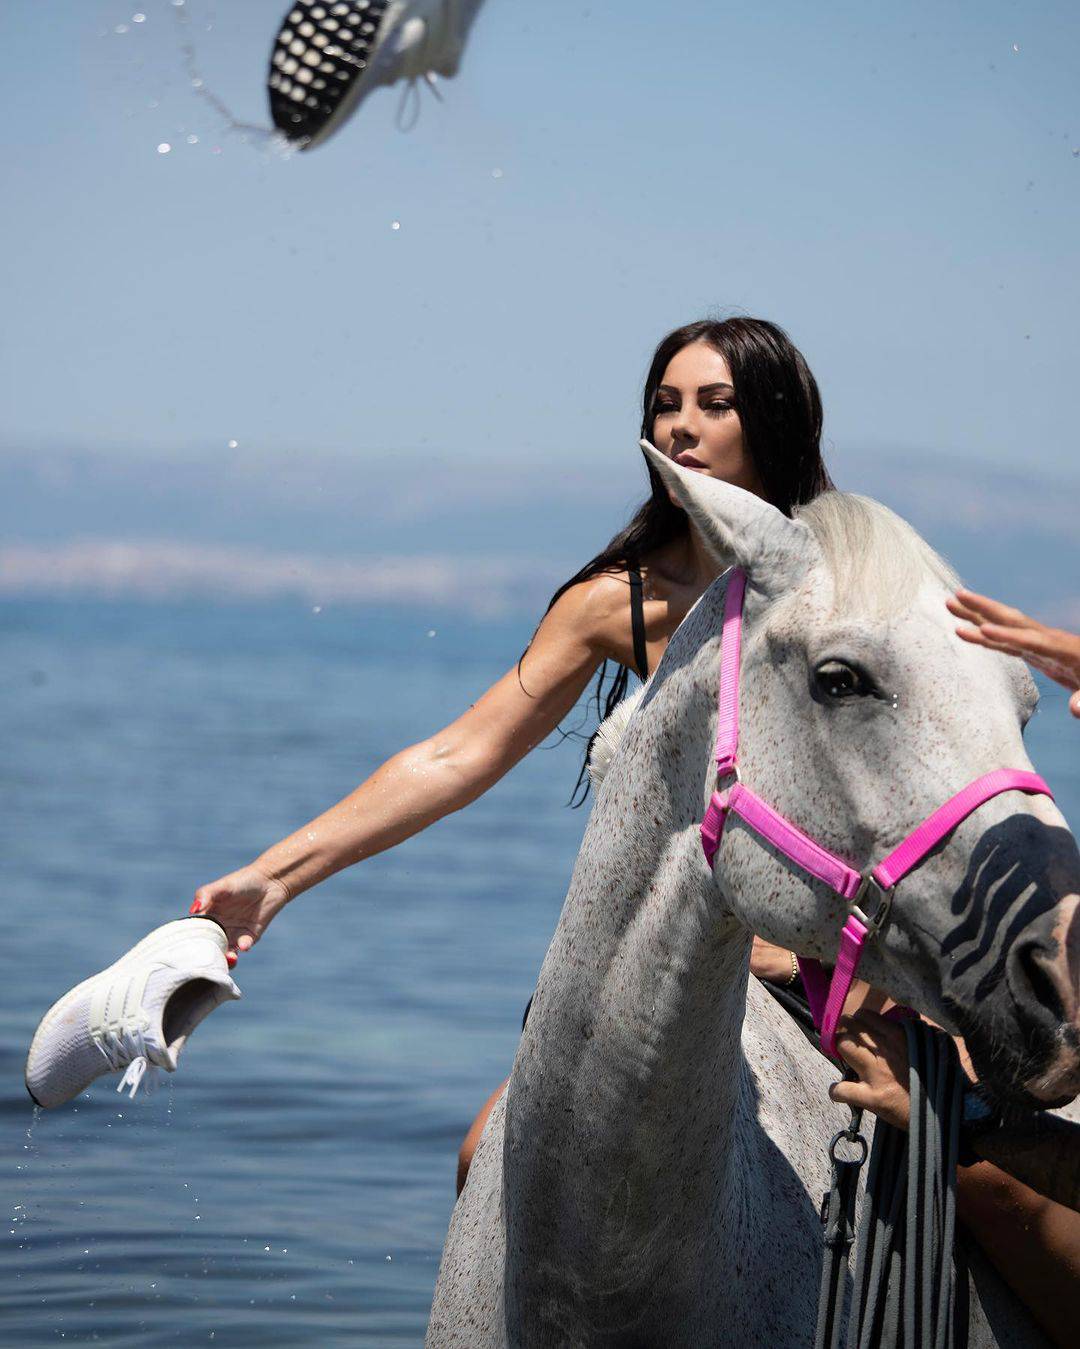 Žanamari imala malu 'nezgodu' na konju pa se našalila: Sve to sam ja...Instagram vs. stvarnost